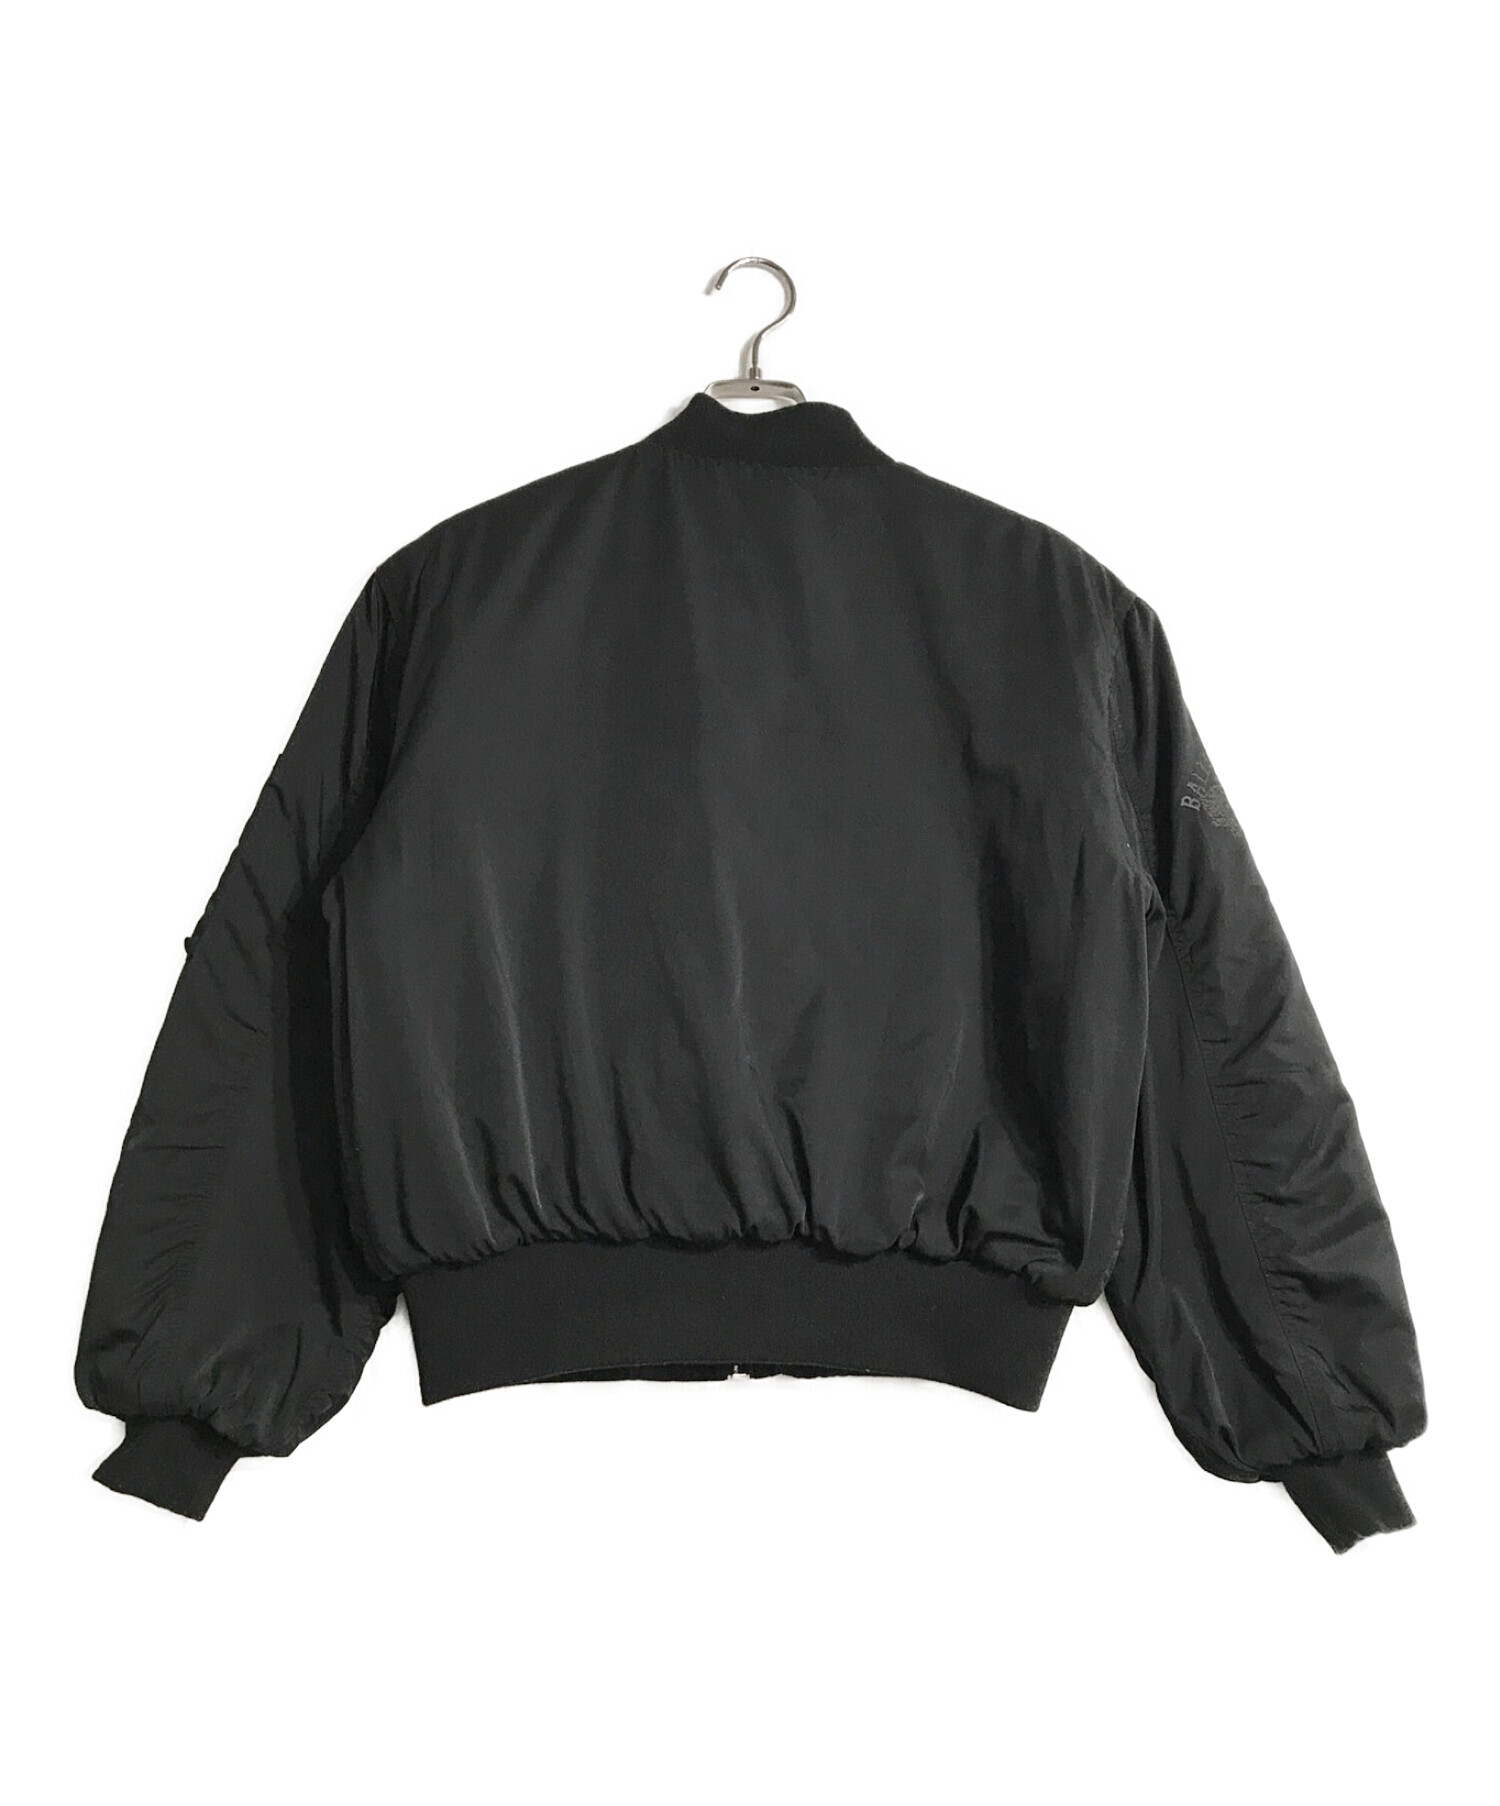 B.BALLSY (ボールジーブラザーズ) ショートレングスMA-1ジャケット ブラック サイズ:M